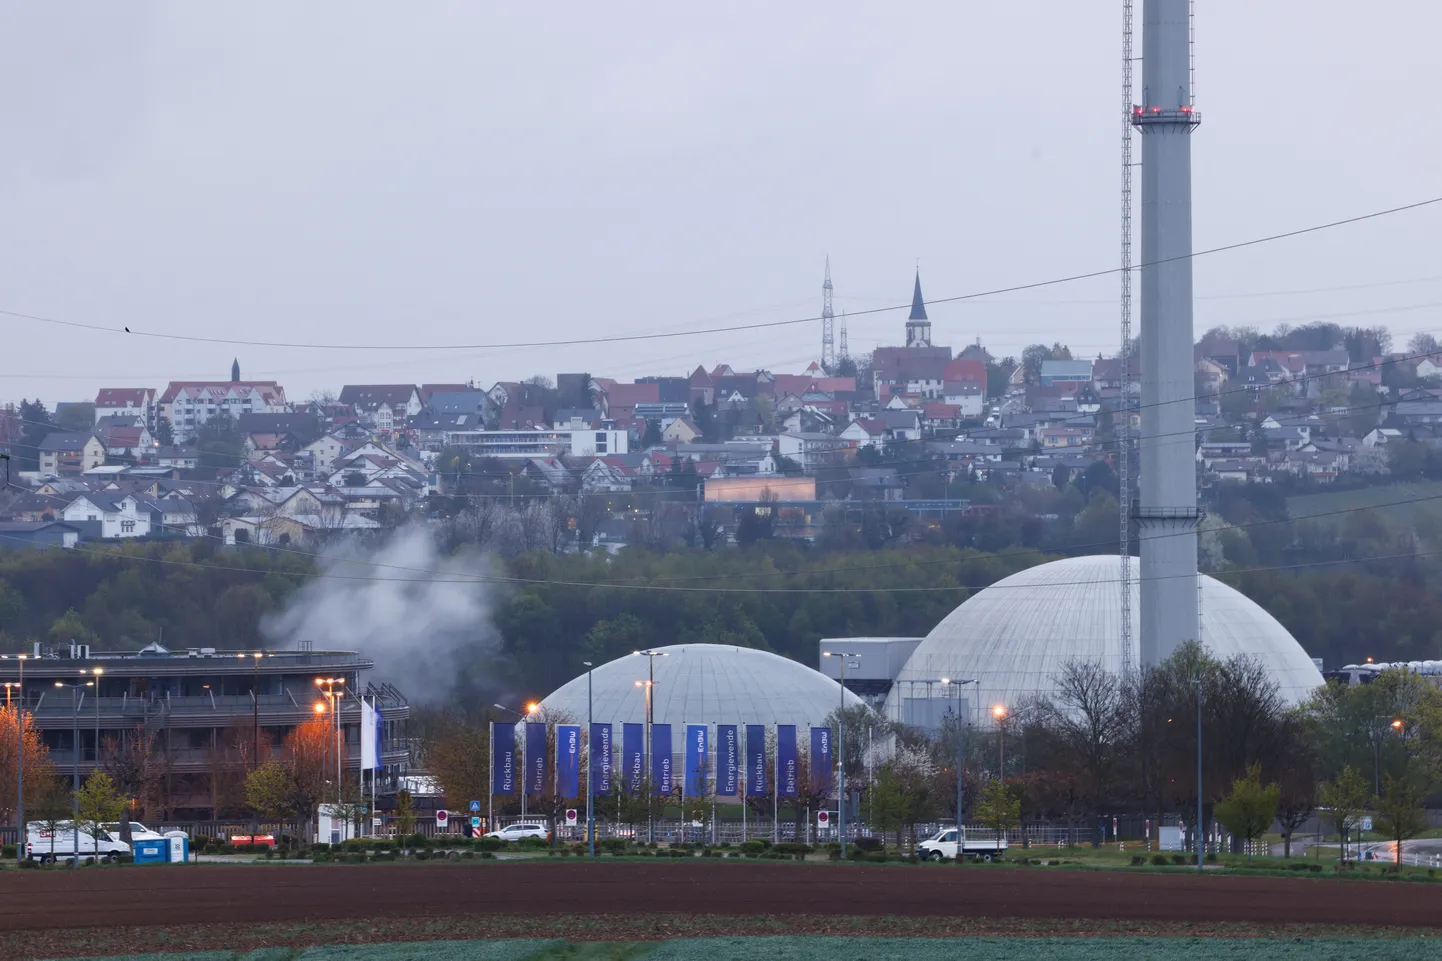 Последние три атомные электростанции Германии прекратили работу, что знаменует собой конец производства атомной энергии в стране спустя более 60 лет.